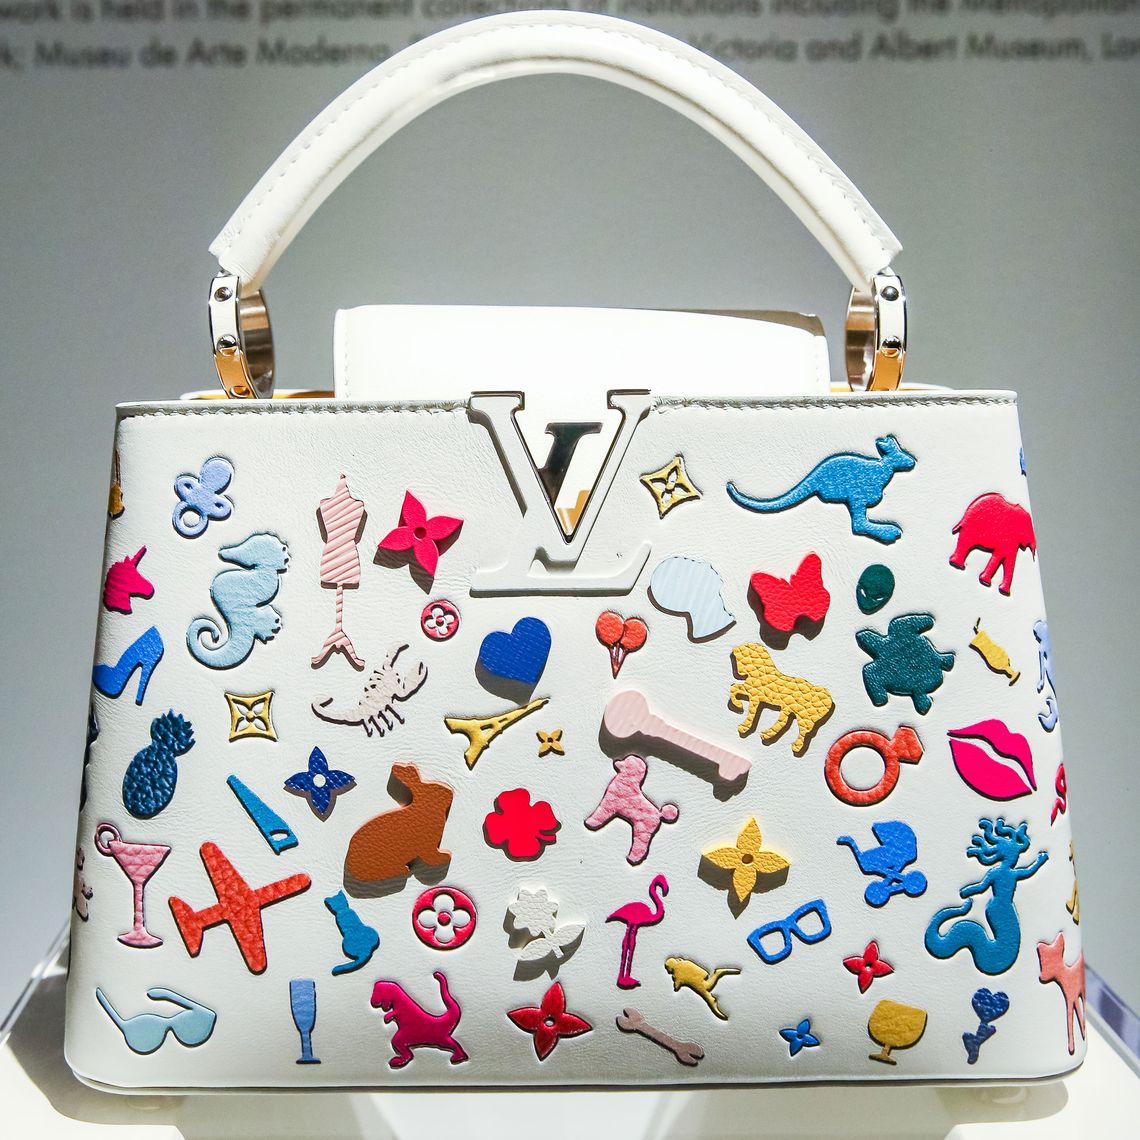 Louis Vuitton's Capucines Handbag Gets a Museum-Worthy Update